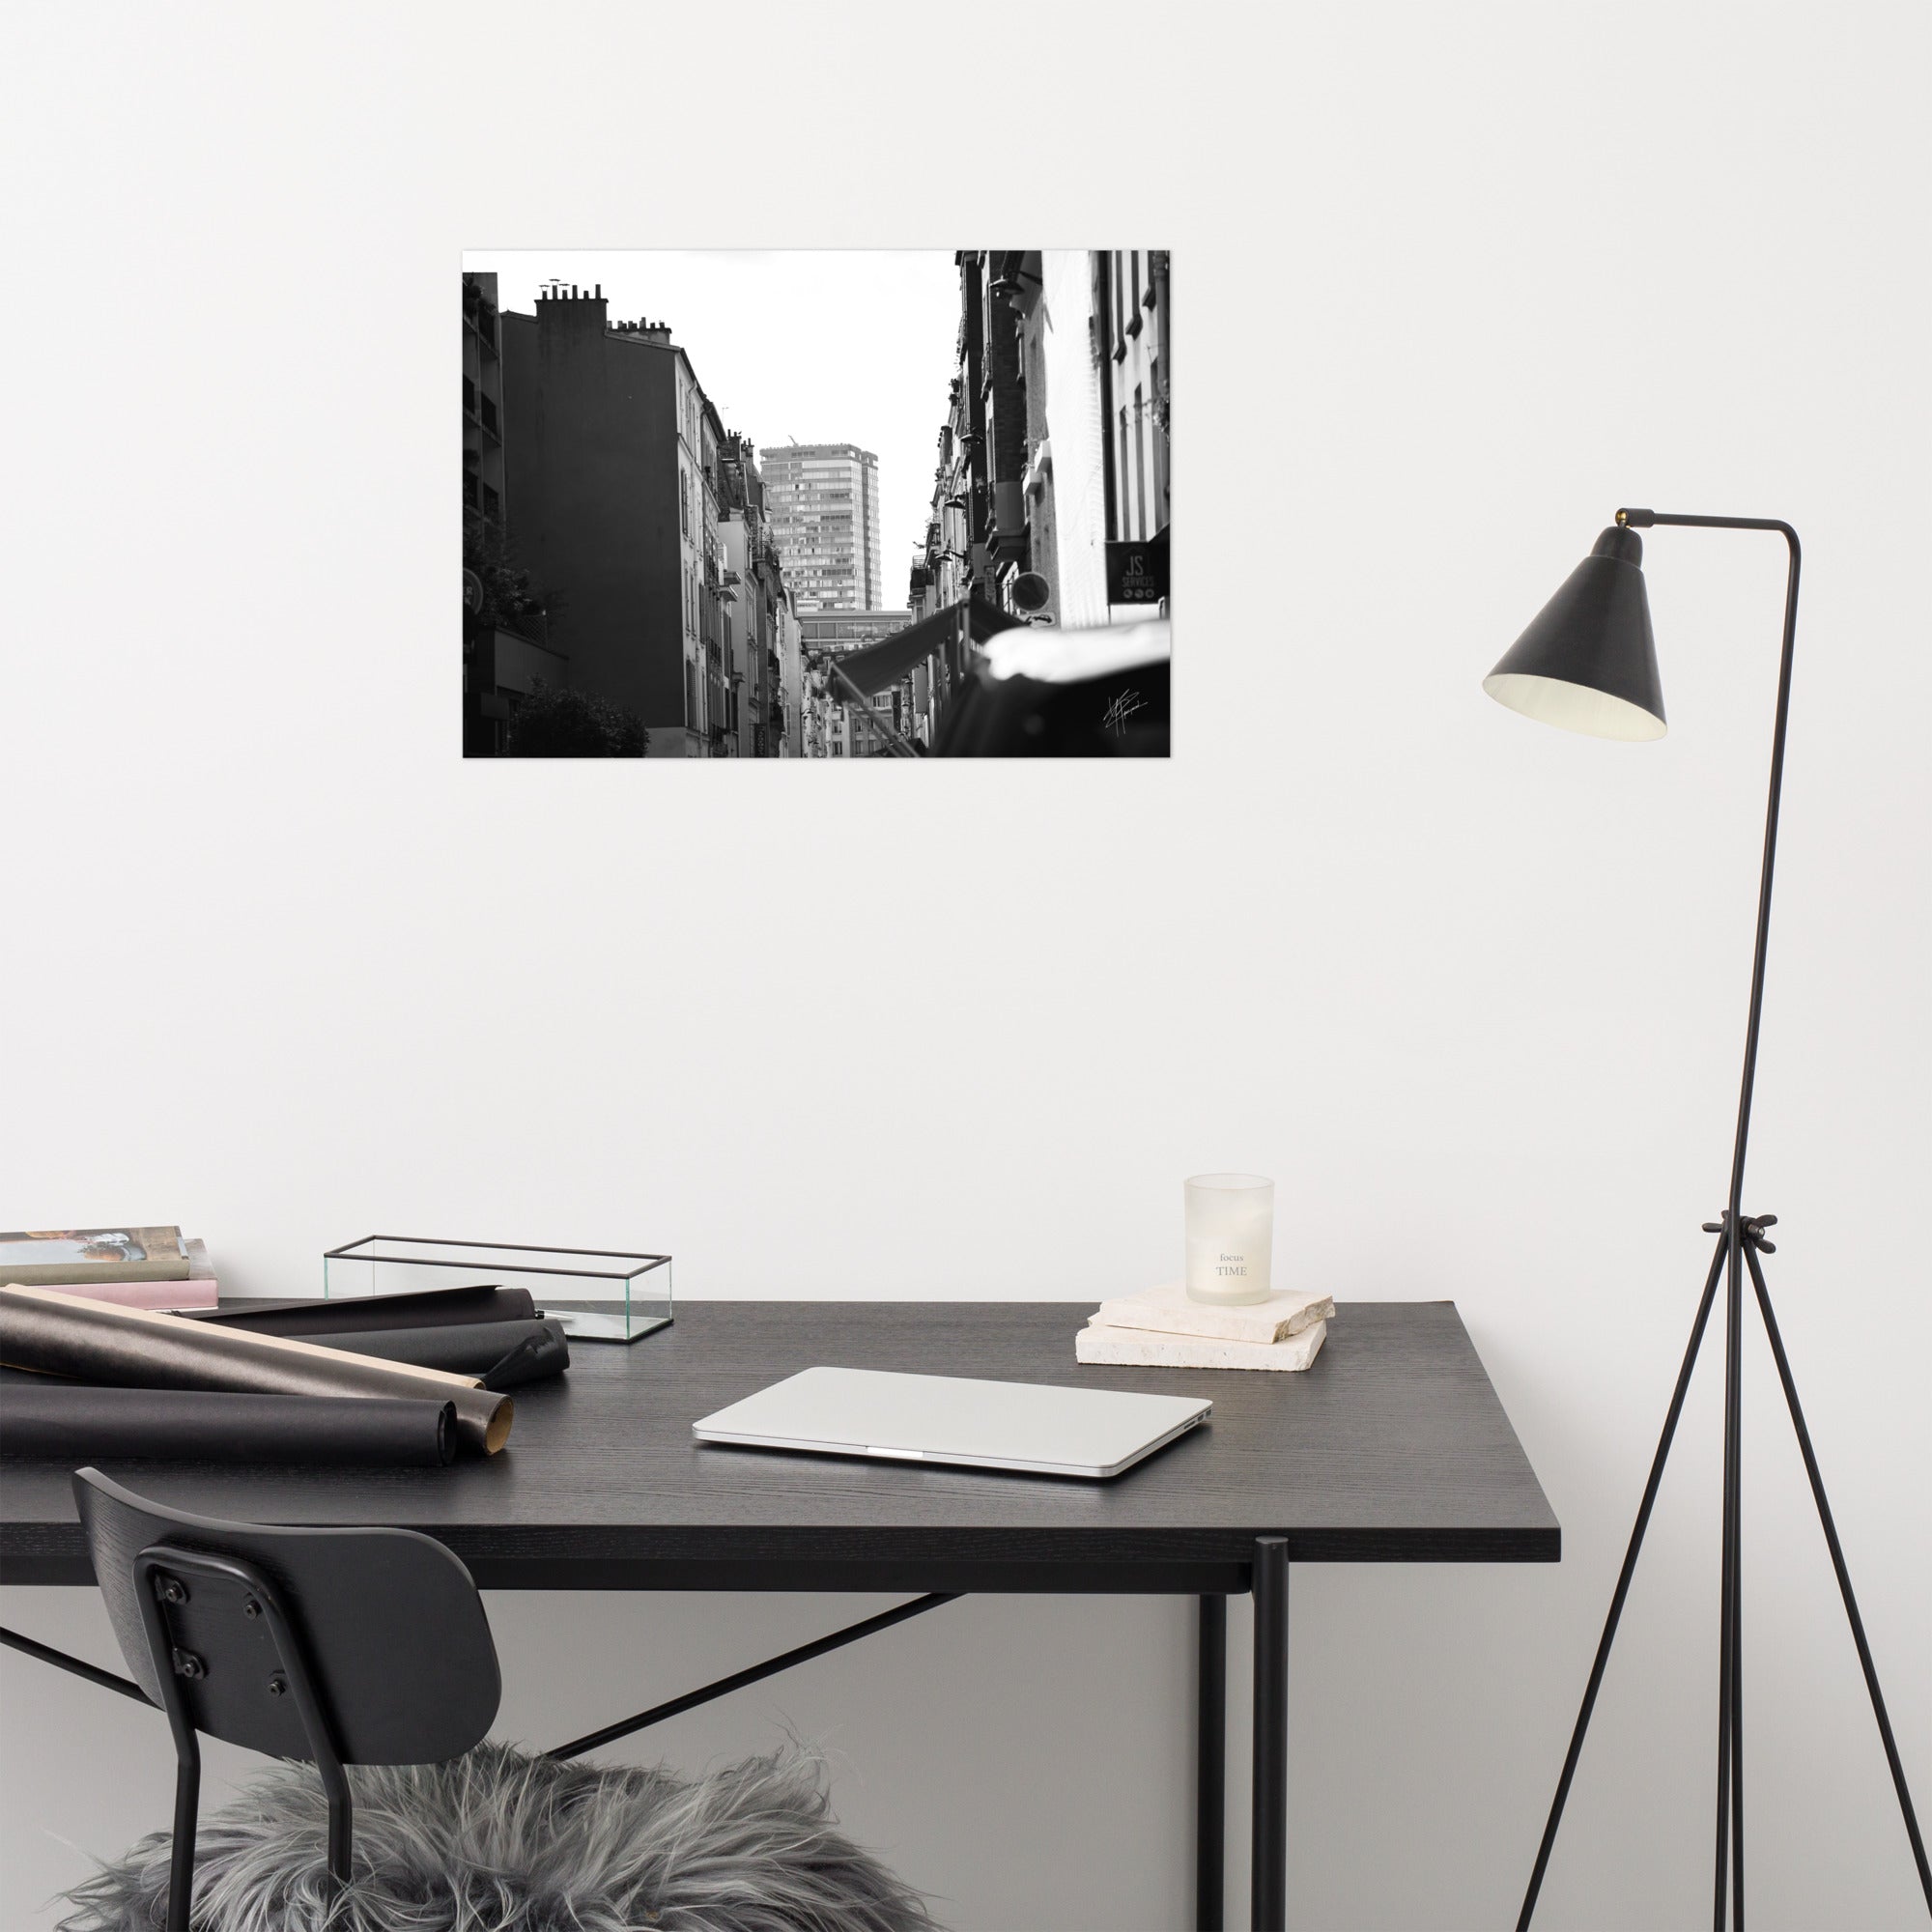 Photographie en noir et blanc de la 'Rue Tiphaine', capture authentique de la vie quotidienne du vieux Paris.